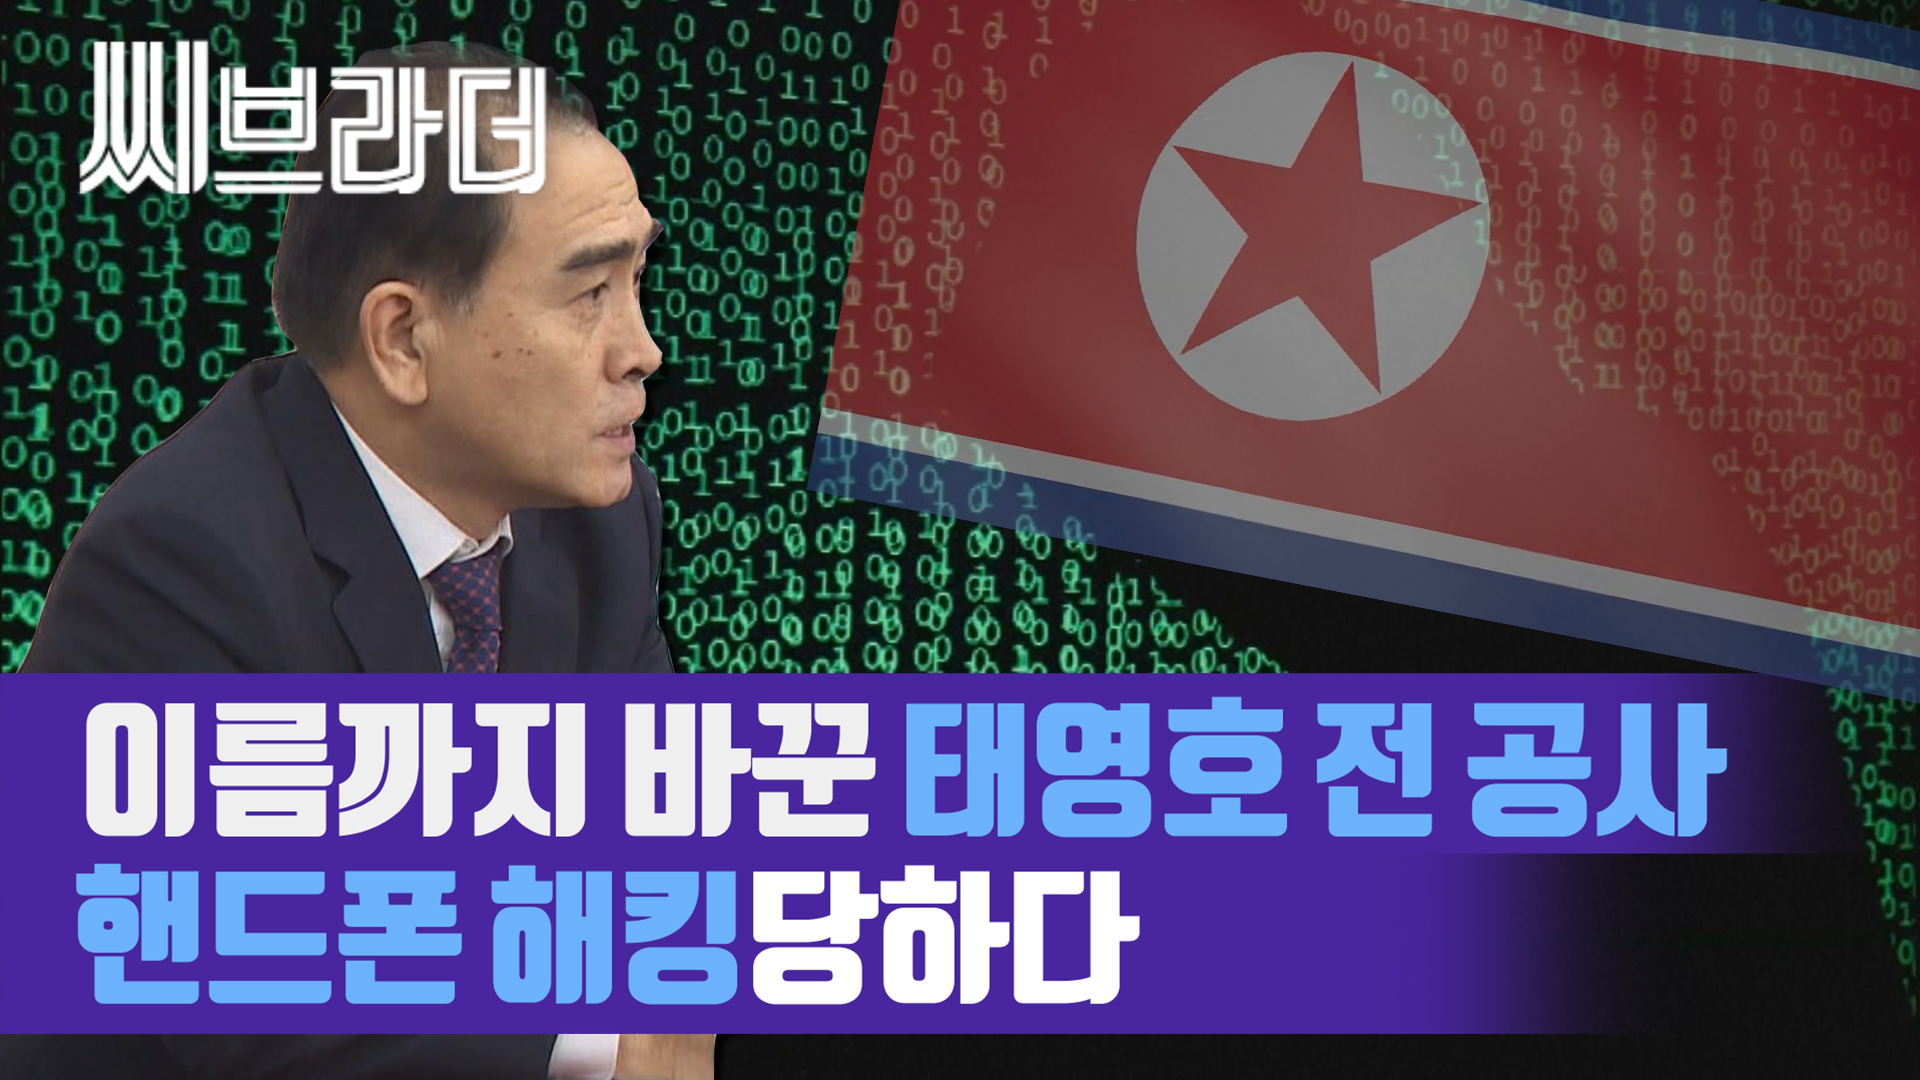 북한 추정 조직에 해킹당한 태영호 전 공사의 핸드폰 [씨브라더] 게시글 이미지